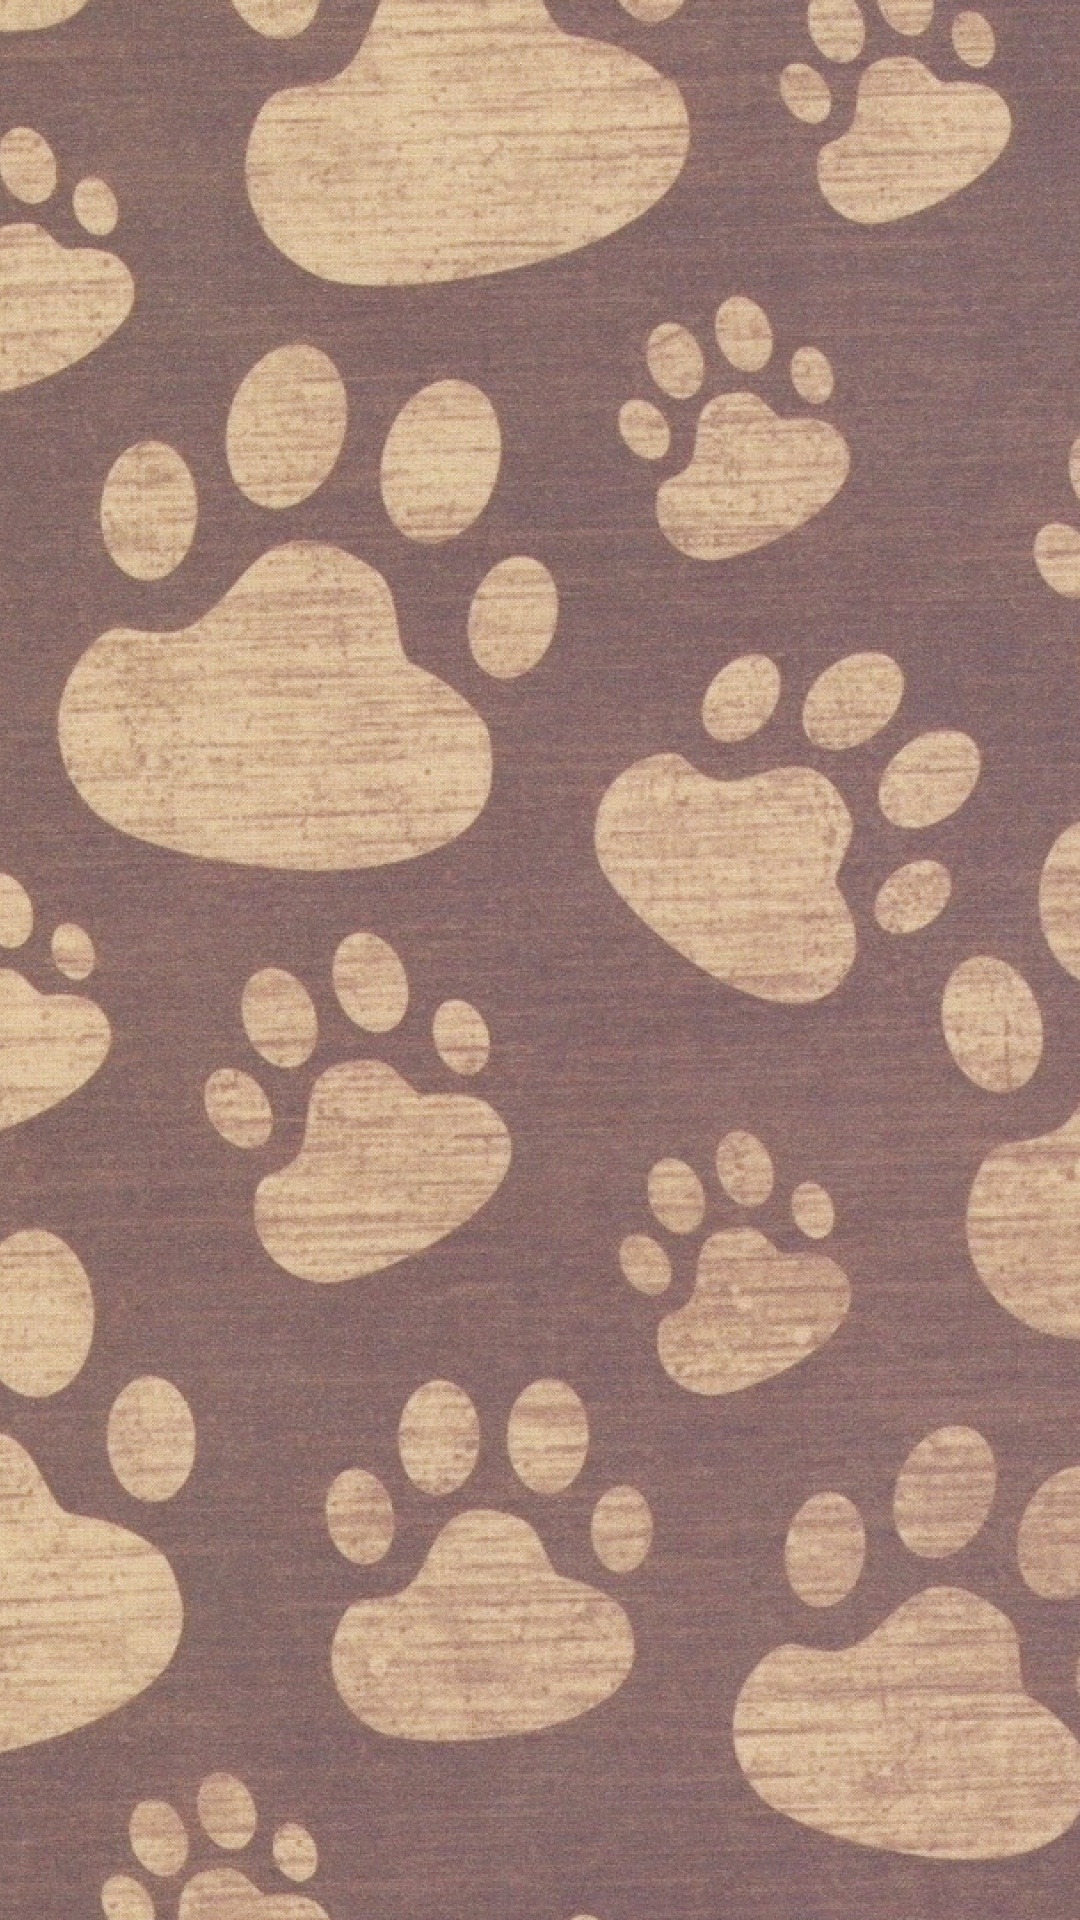 爪子, 棕色, 小狗, 视觉艺术, 黄金猎犬 壁纸 1080x1920 允许